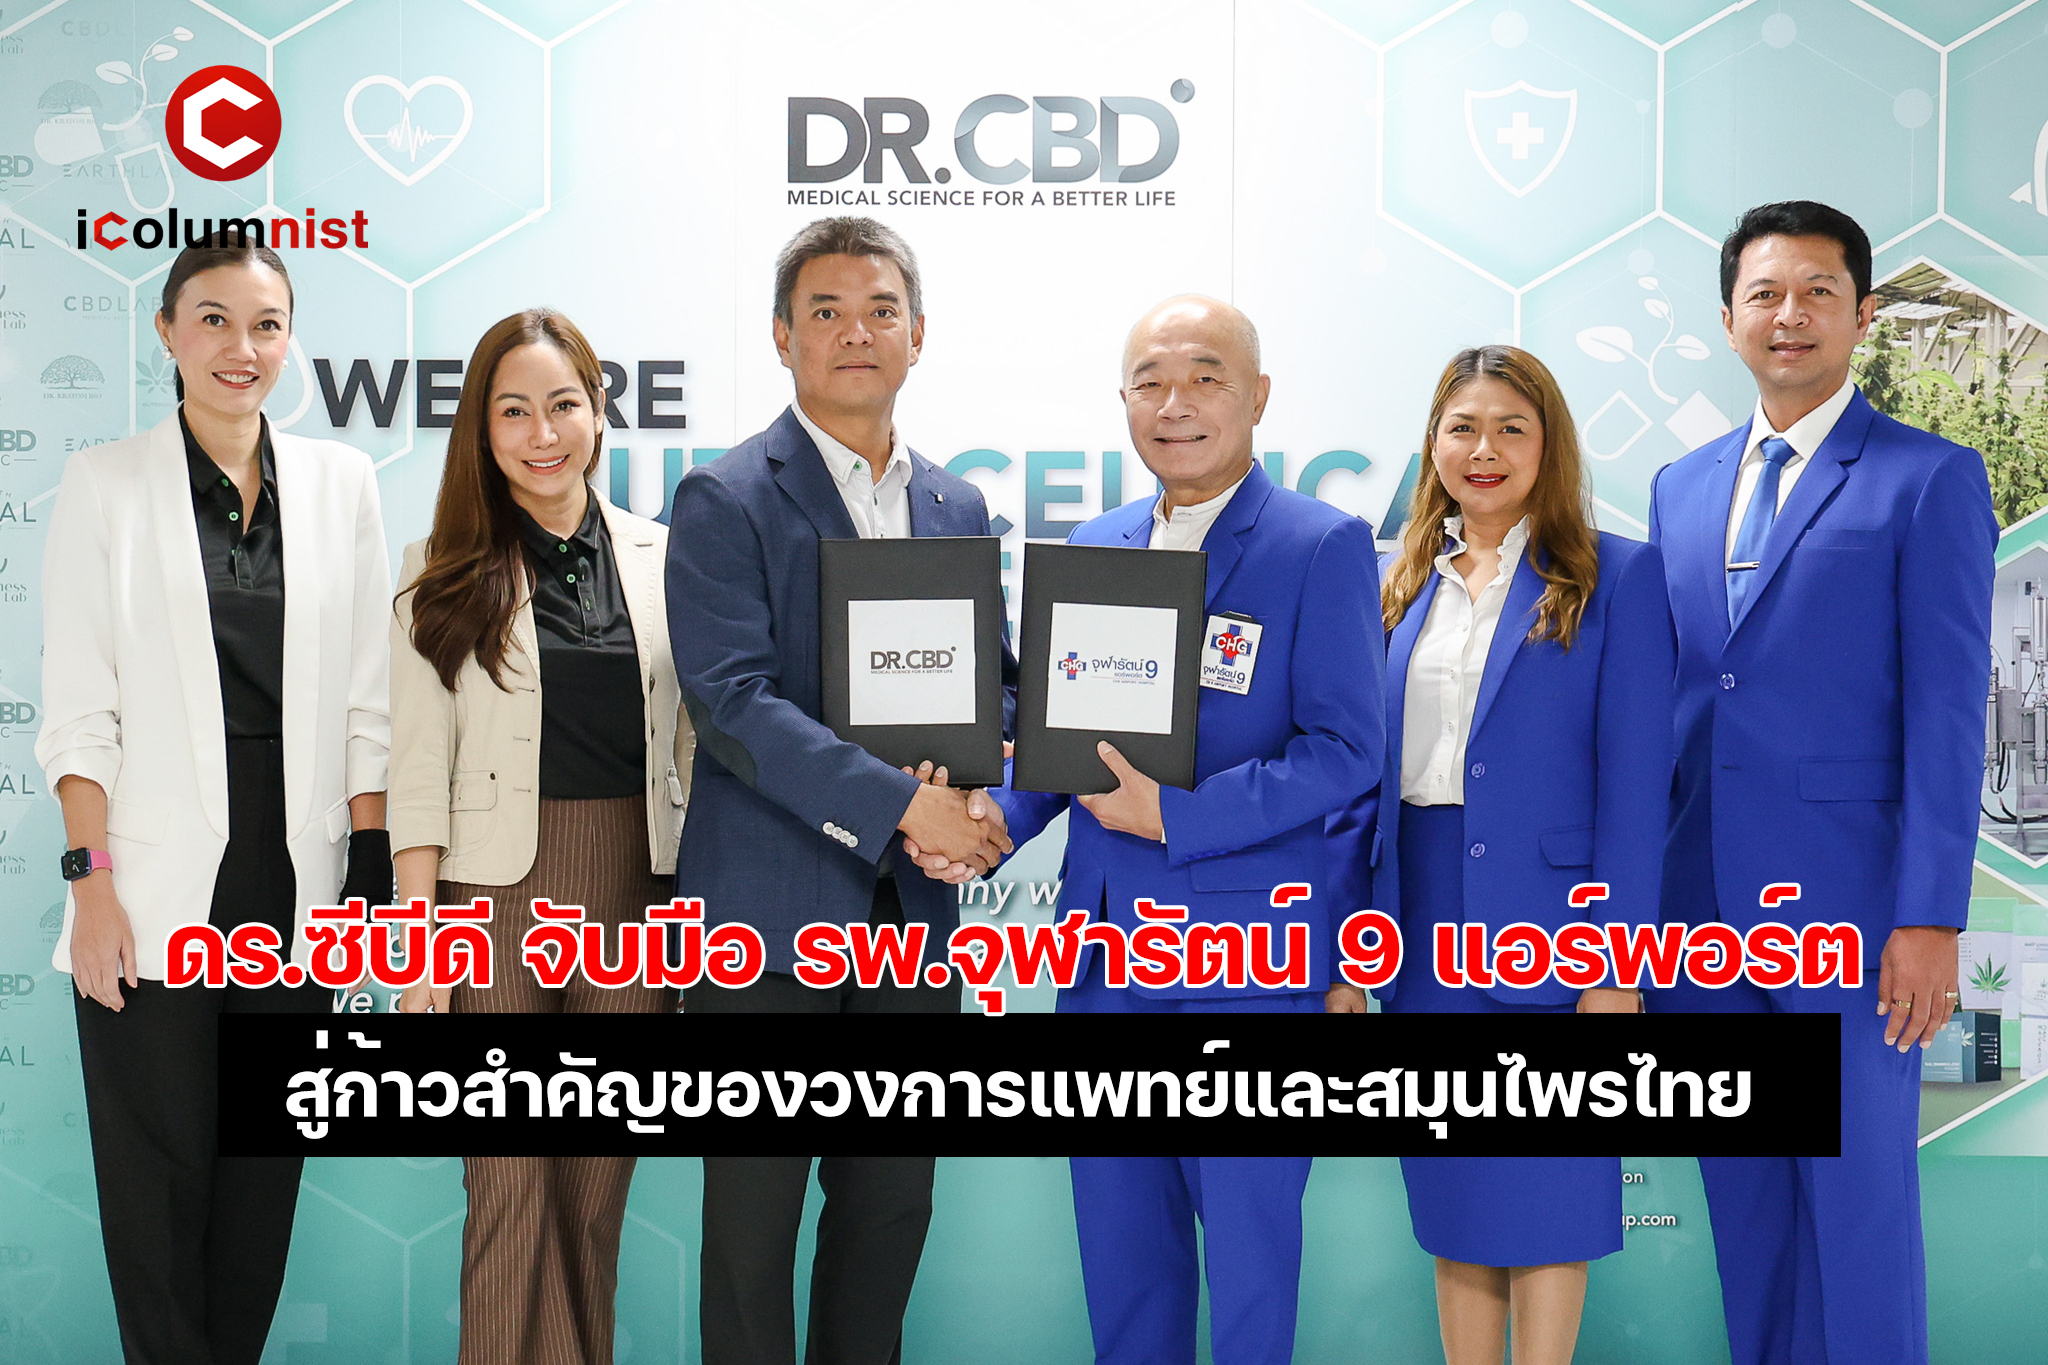  ก้าวสำคัญของวงการแพทย์และสมุนไพรไทย ดร.ซีบีดี (Dr. CBD) จับมือ โรงพยาบาลจุฬารัตน์ 9 แอร์พอร์ต ร่วมมือด้านงานวิจัยนวัตกรรม ผลิตภัณฑ์ทางด้านกัญชง กัญชาและกระท่อม